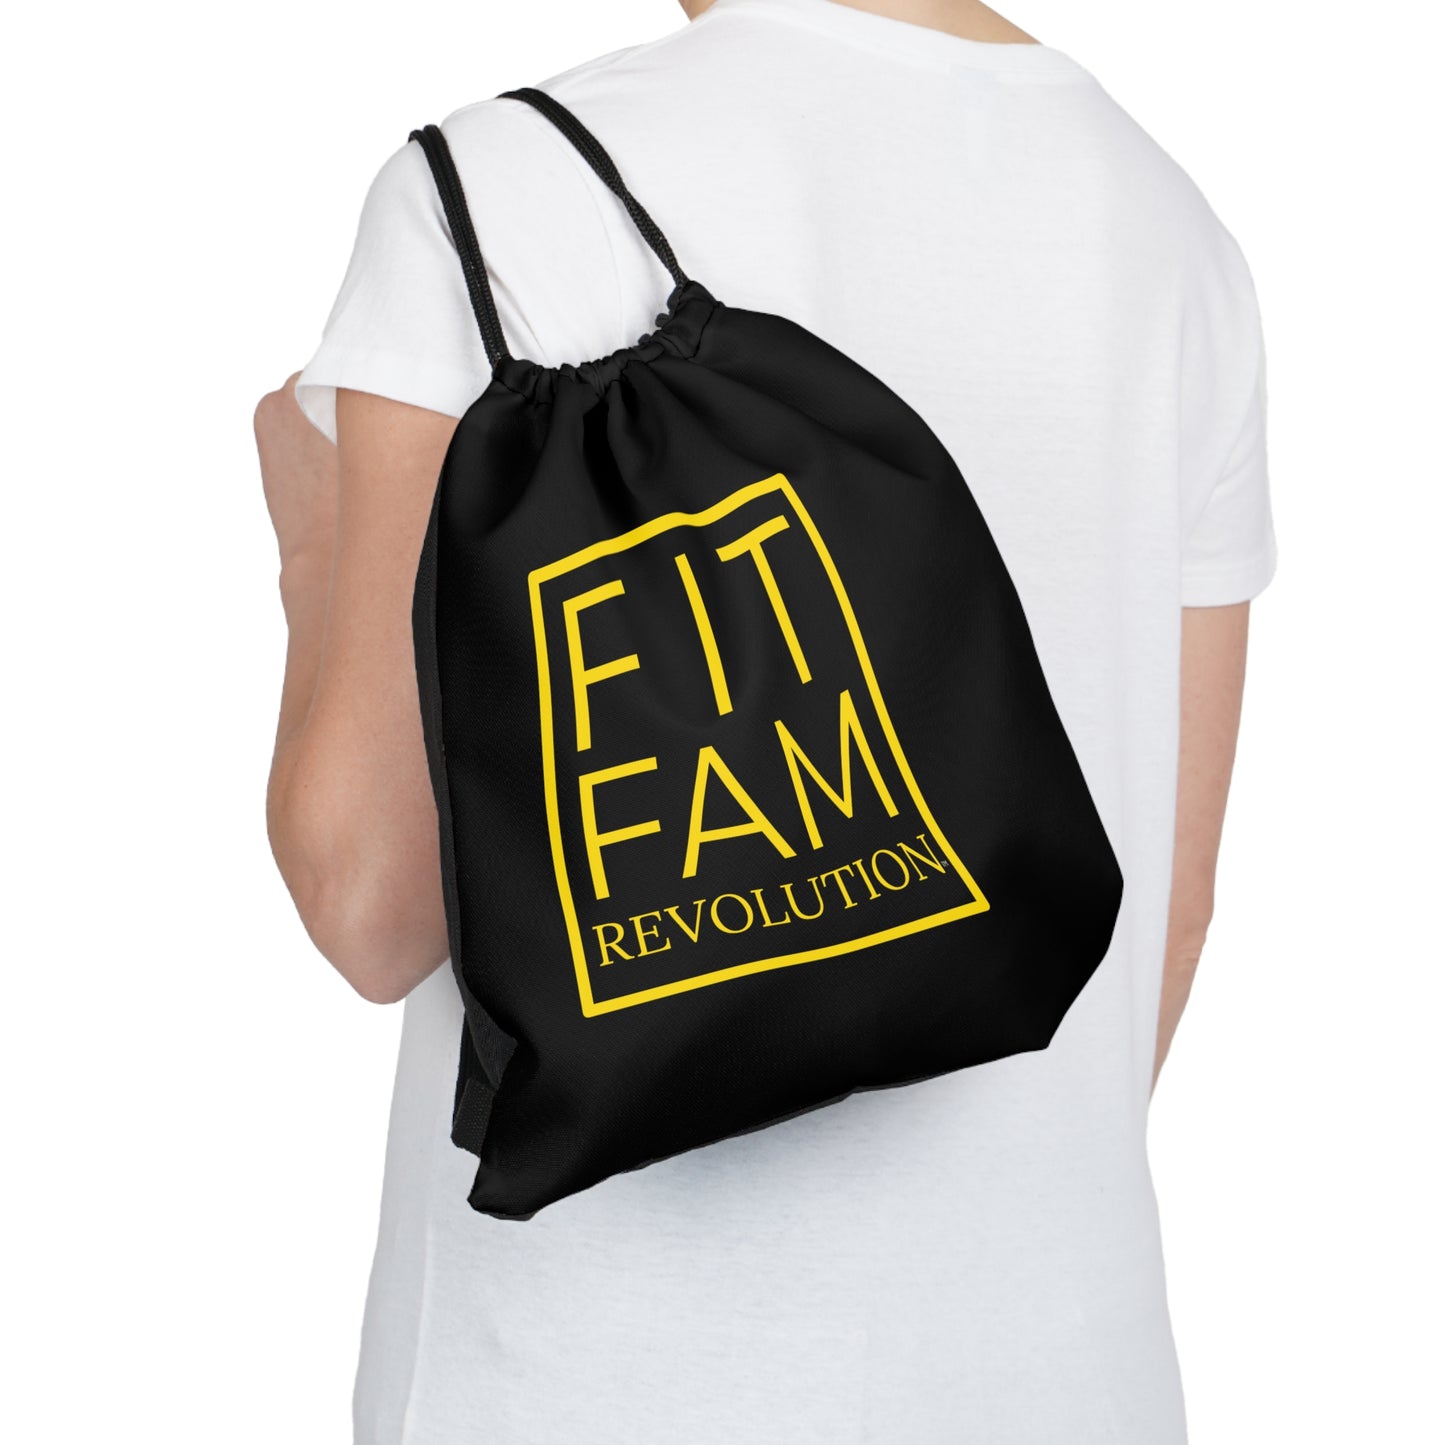 FITFAM Revolution Drawstring Bag